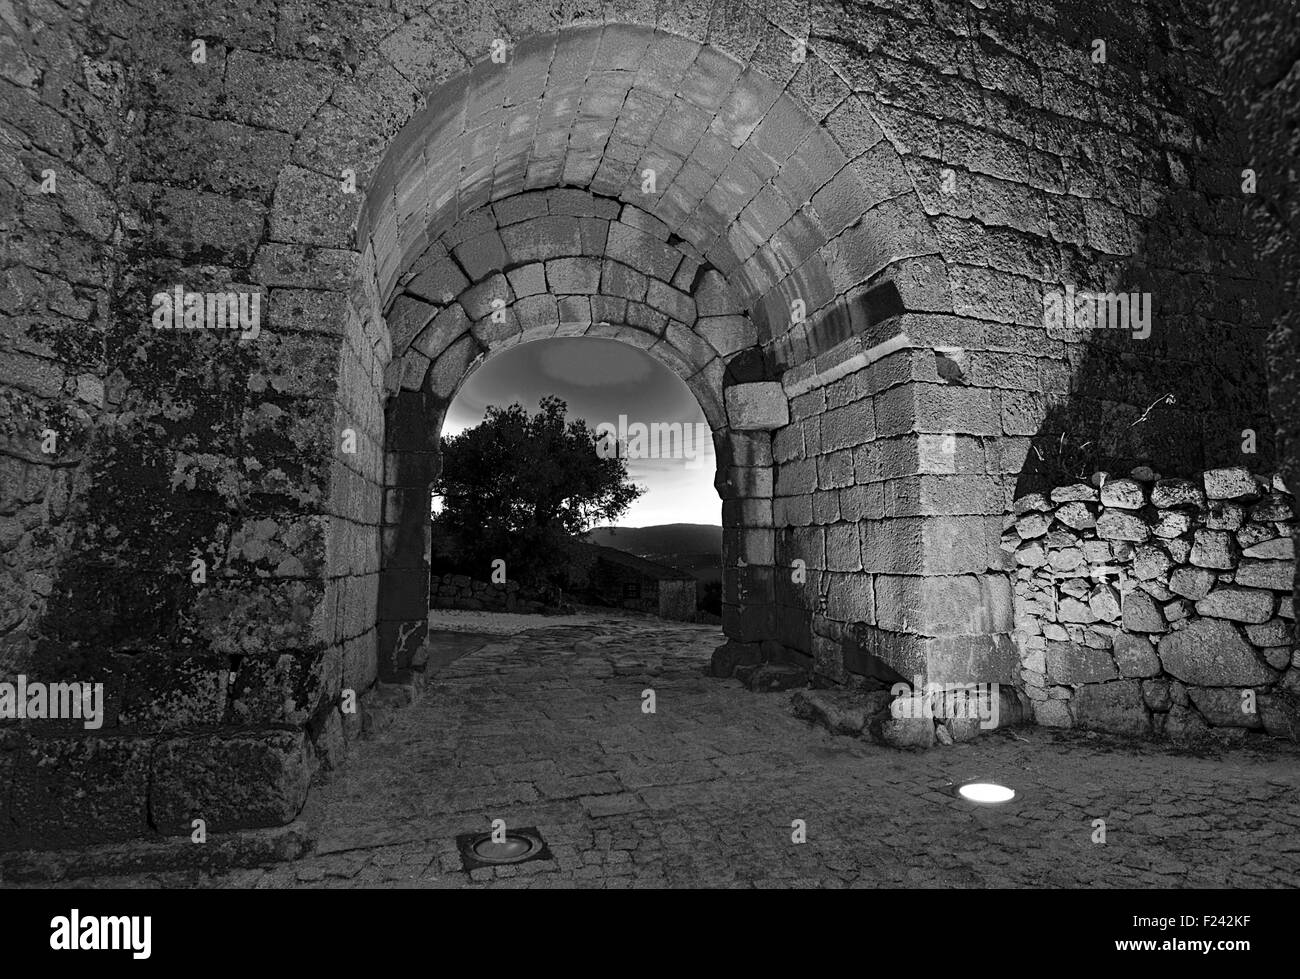 Portugal: Nächtlich beleuchteten mittelalterlichen Tor des historischen Dorfes Sortelha (bw) Stockfoto